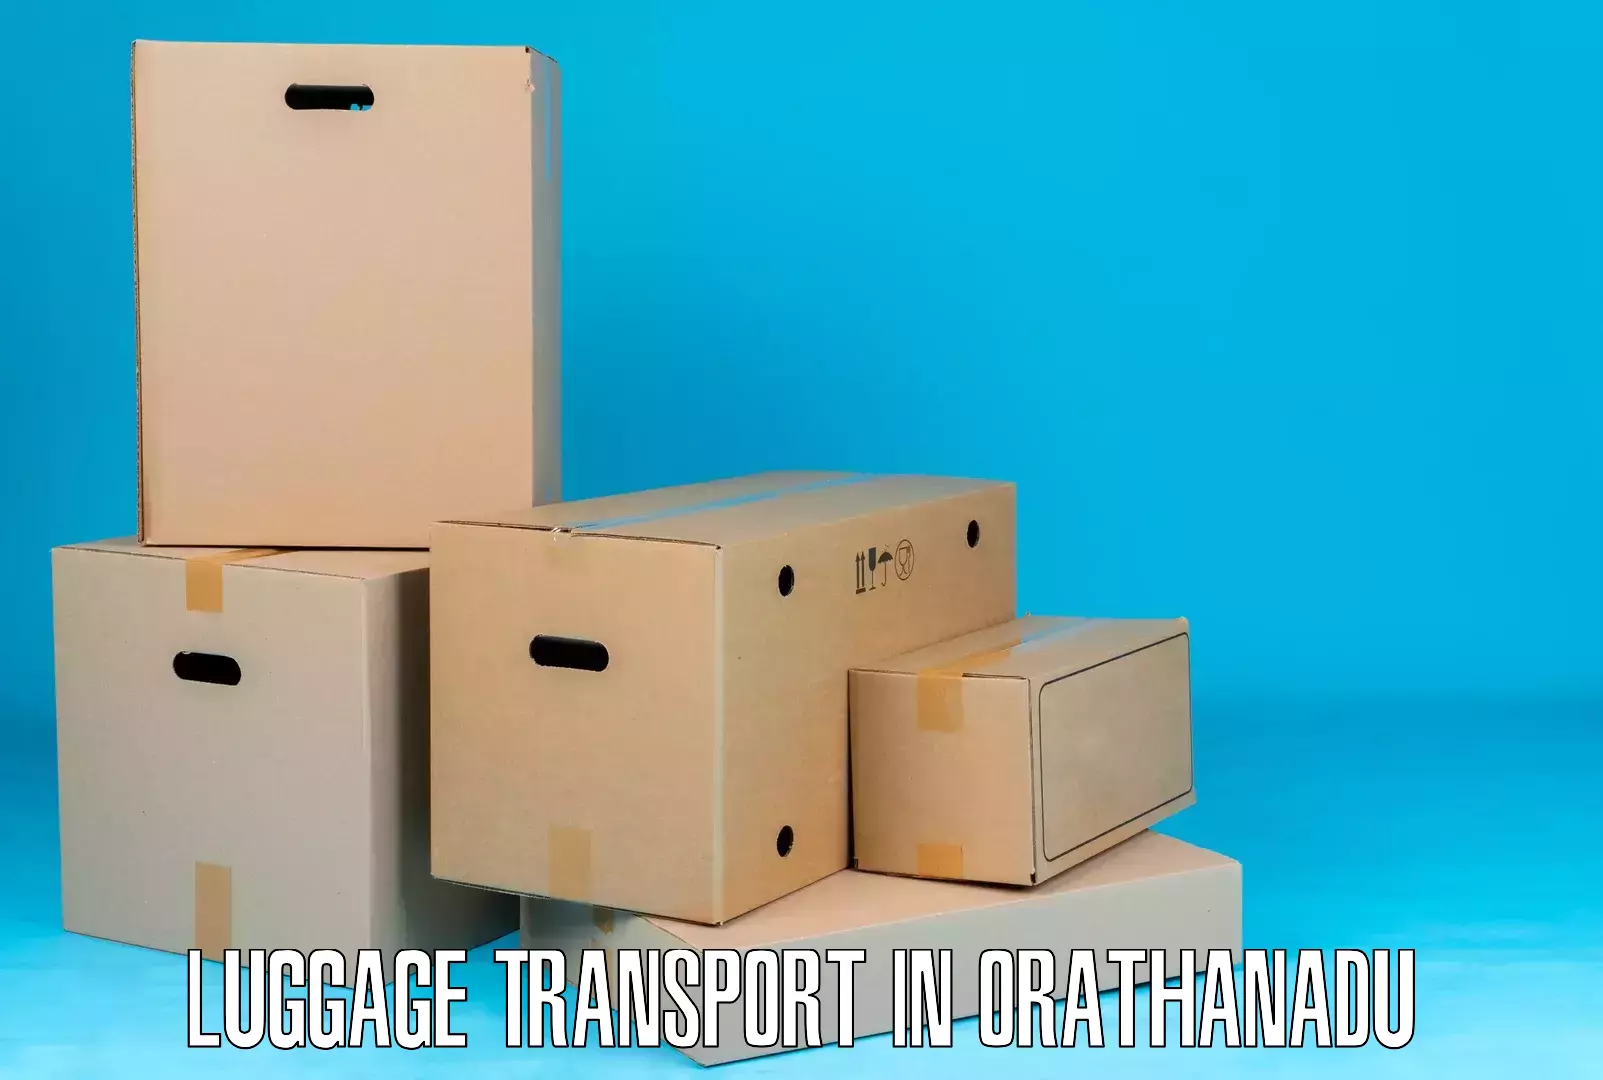 Luggage transport deals in Orathanadu